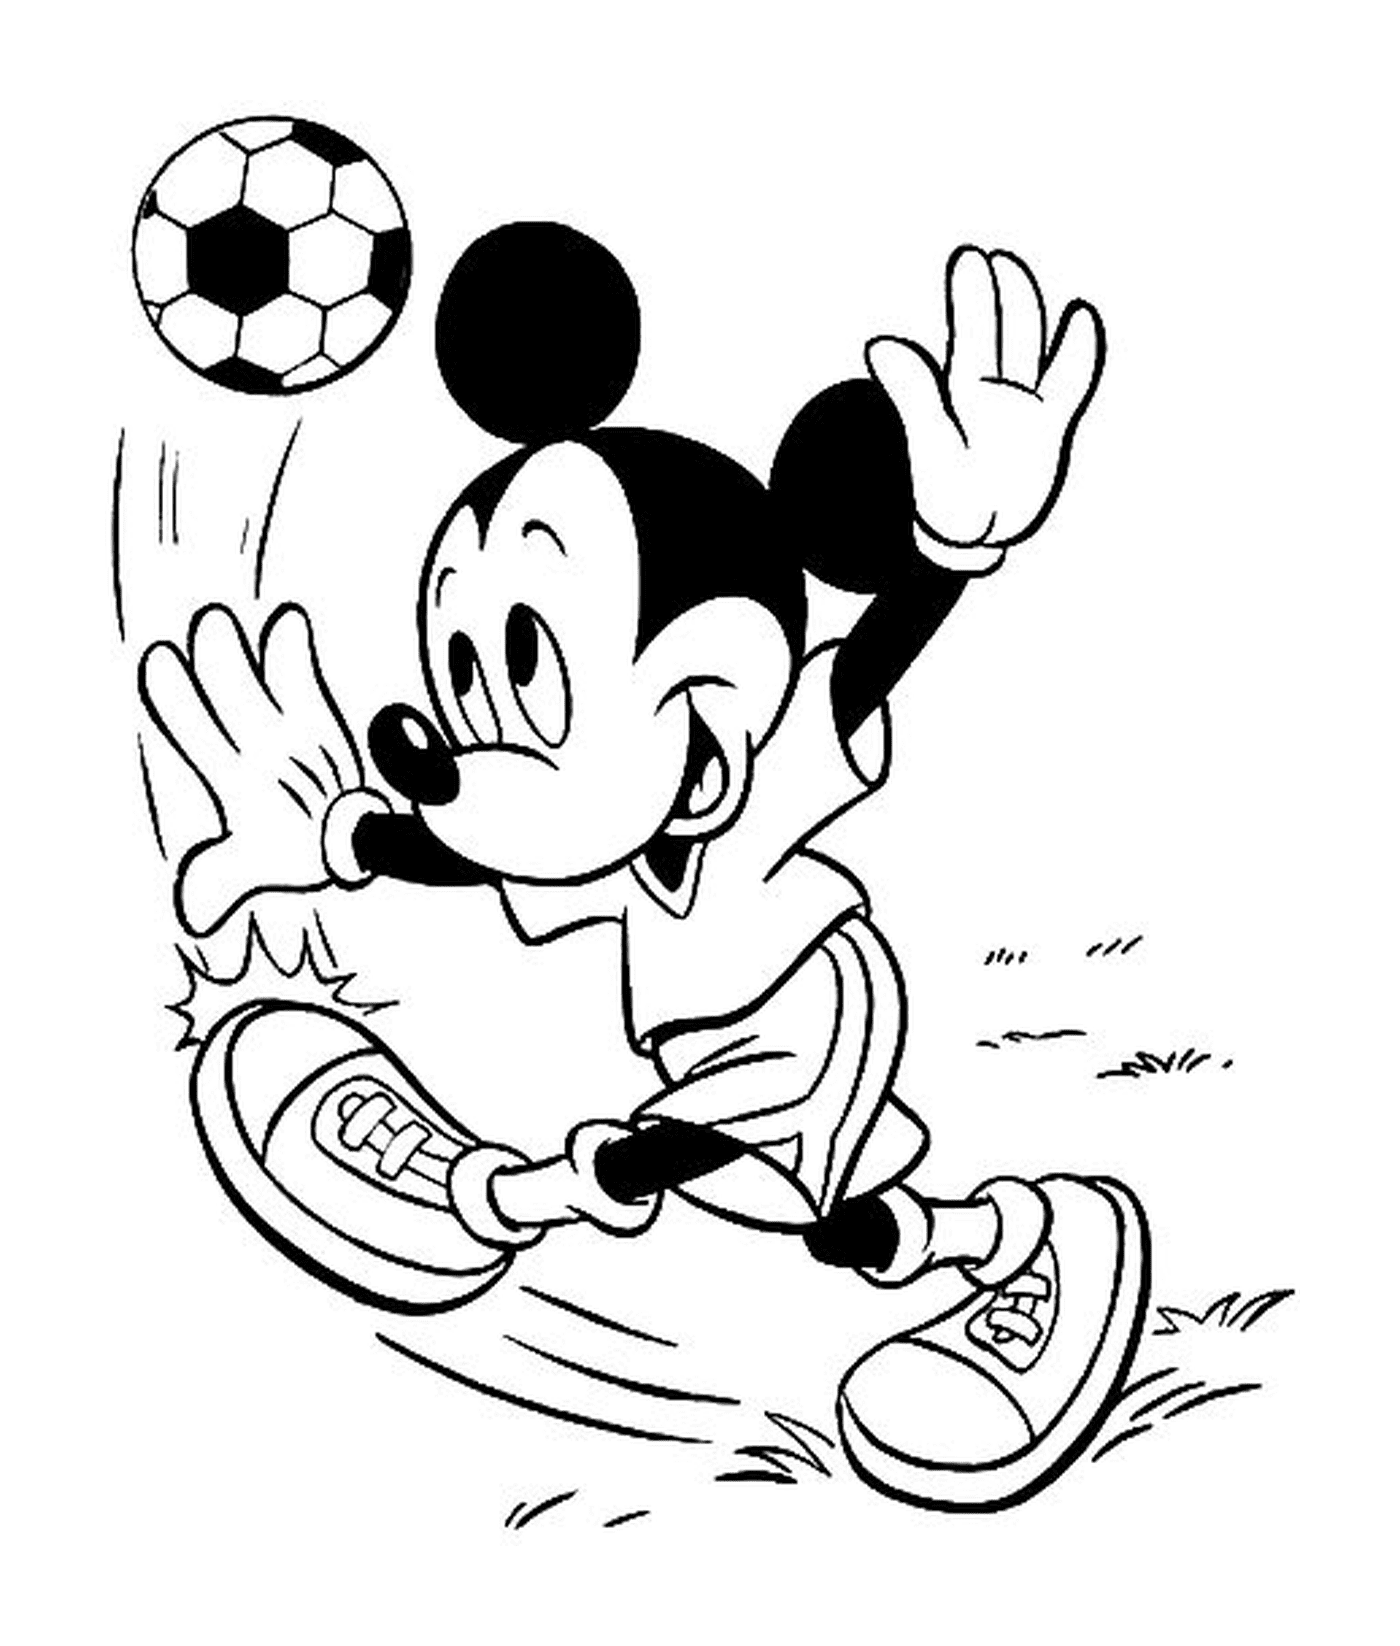  Mickey Mouse juega al fútbol 